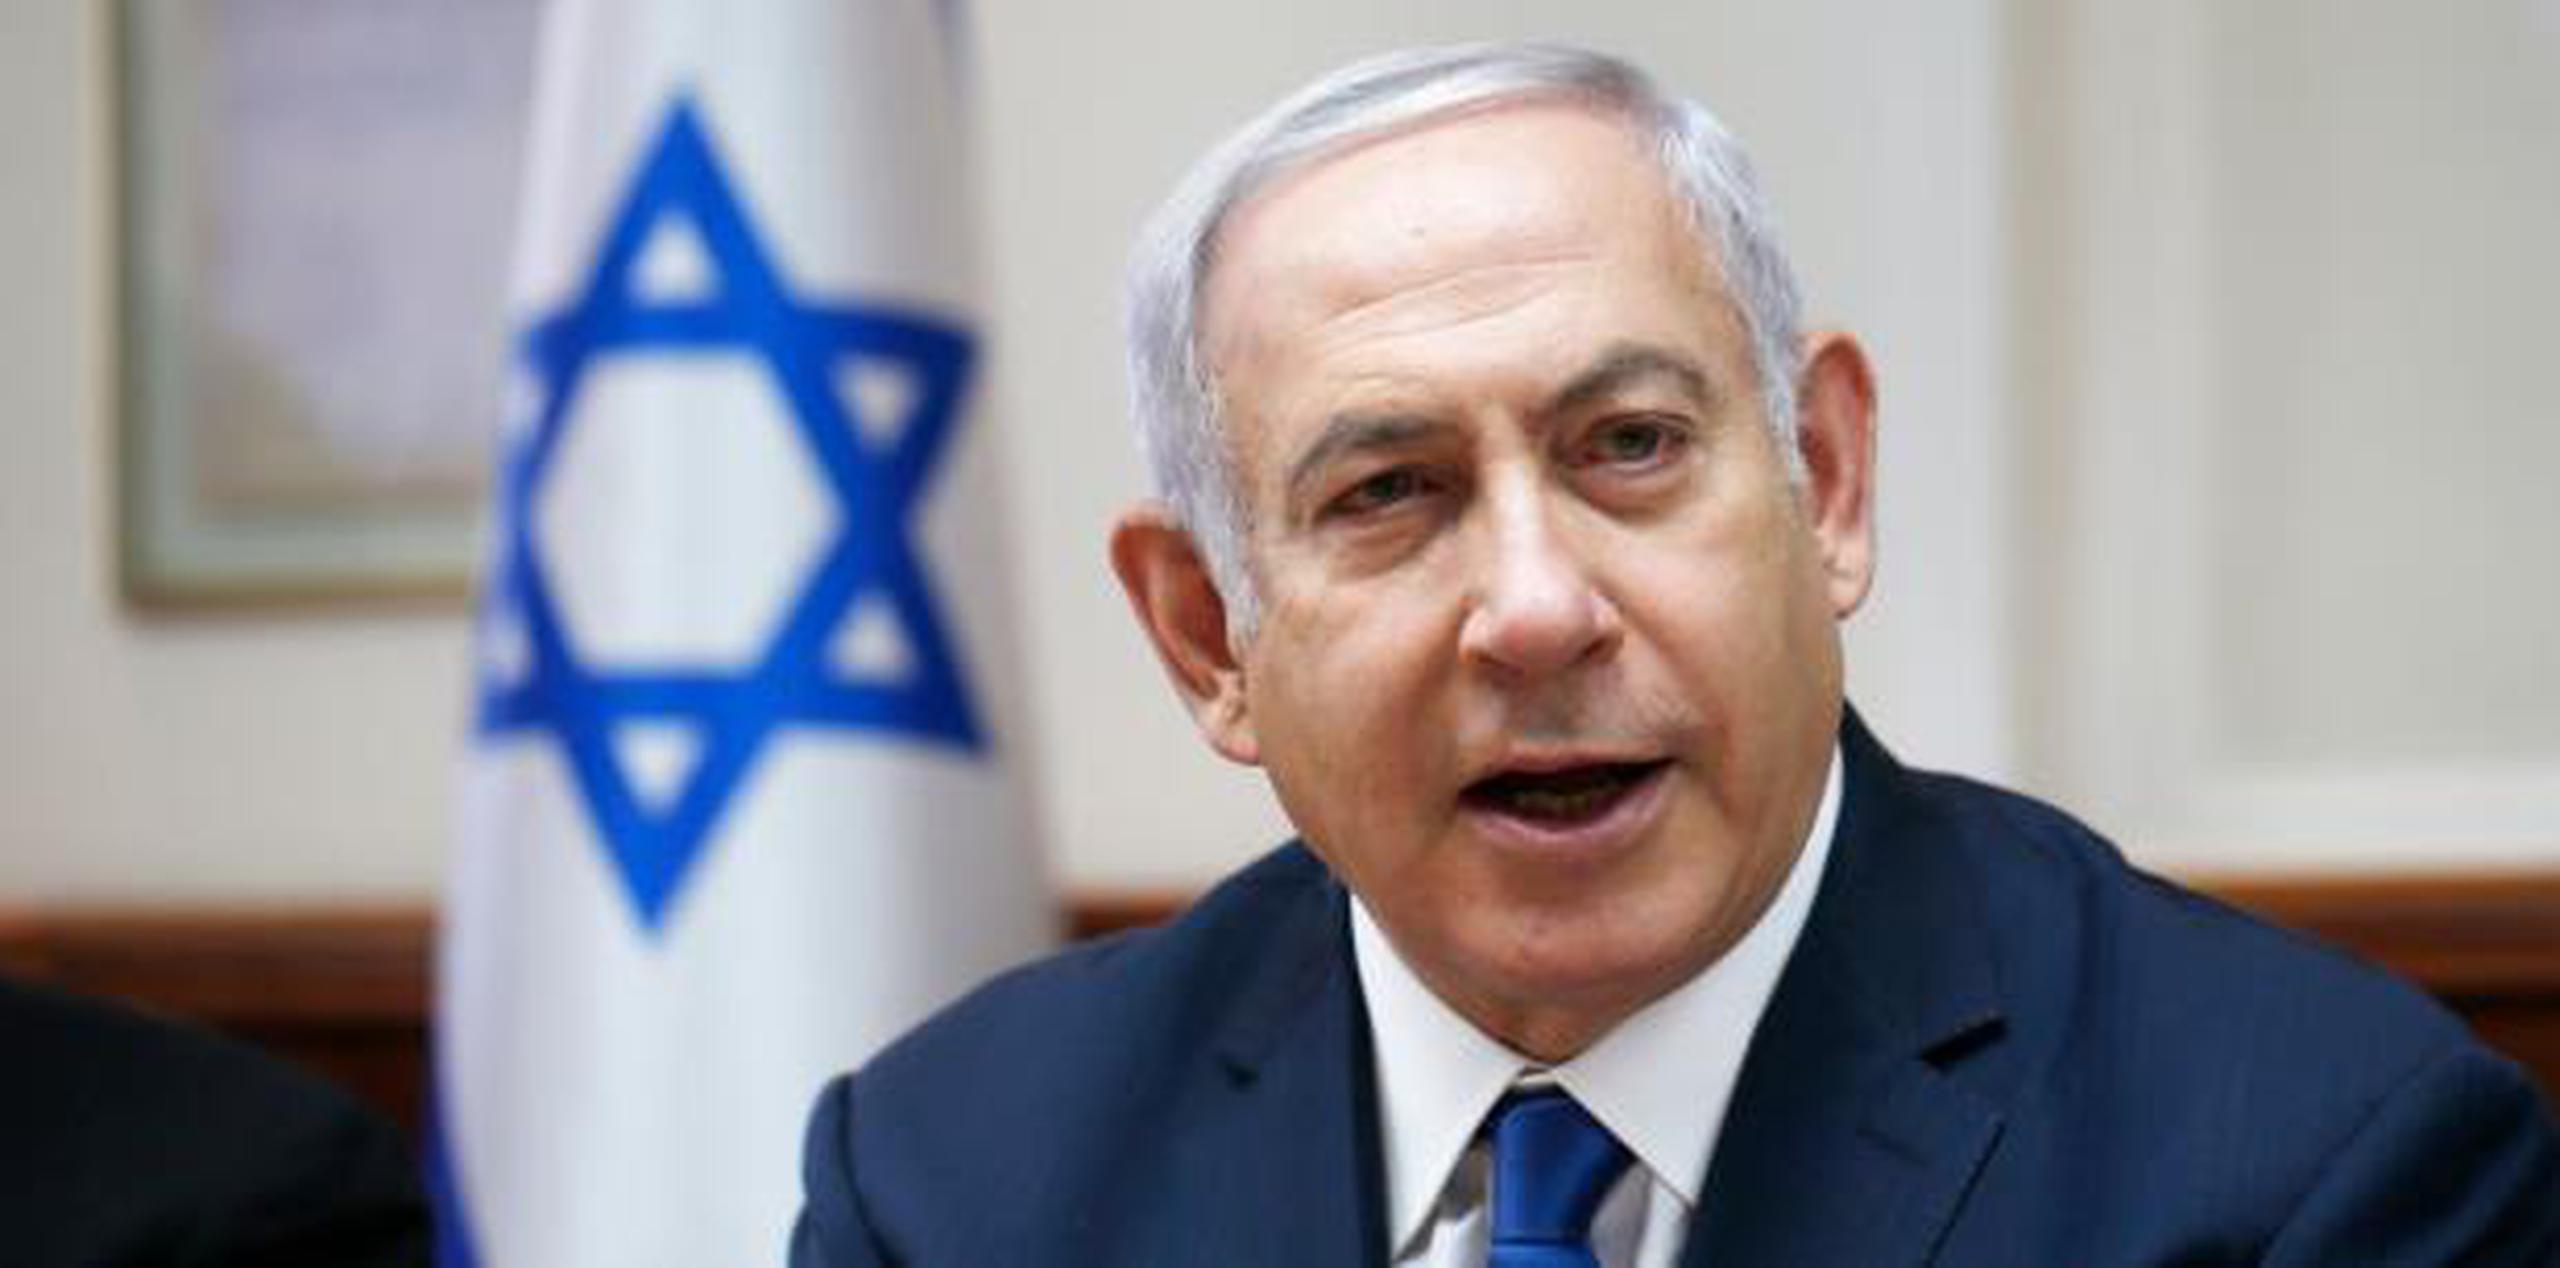 El primer ministro Benjamin Netanyahu ha jurado que la democracia israelí continuará a mantener los derechos de la minoría e individuos. (AP)